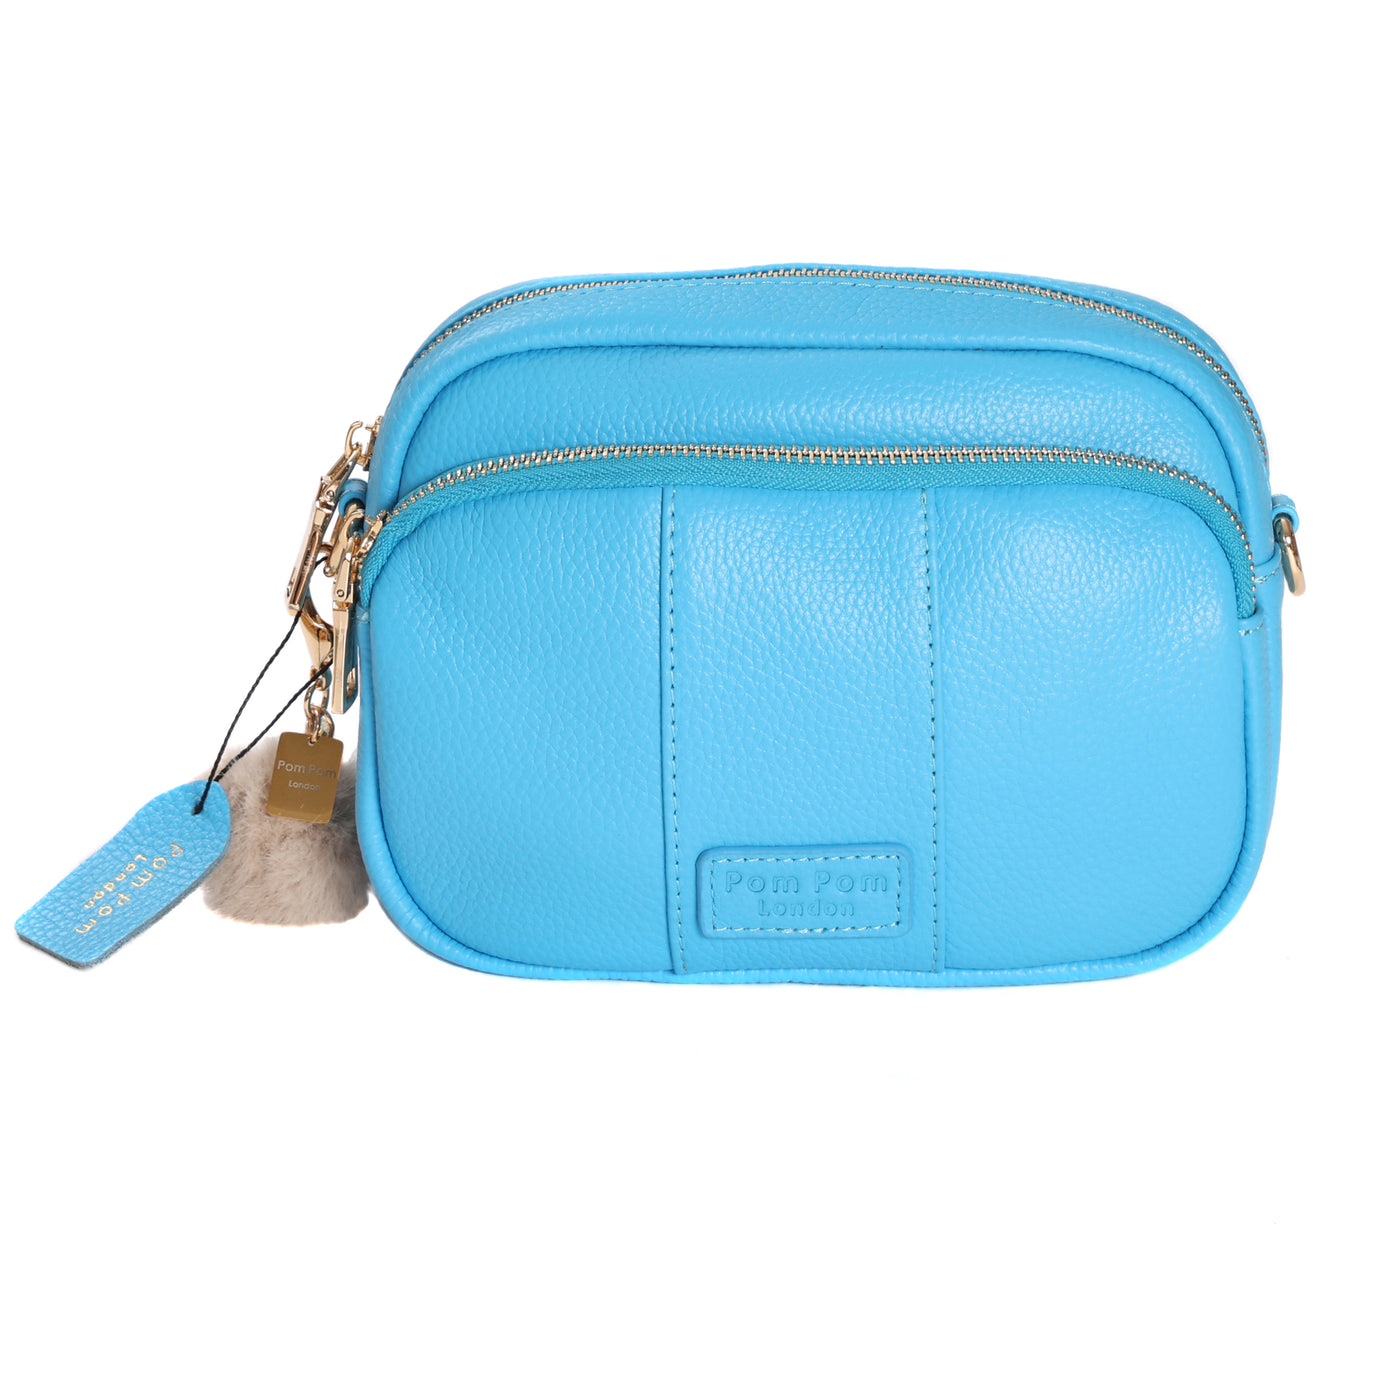 Mayfair Bag Azure Blue & Accessories